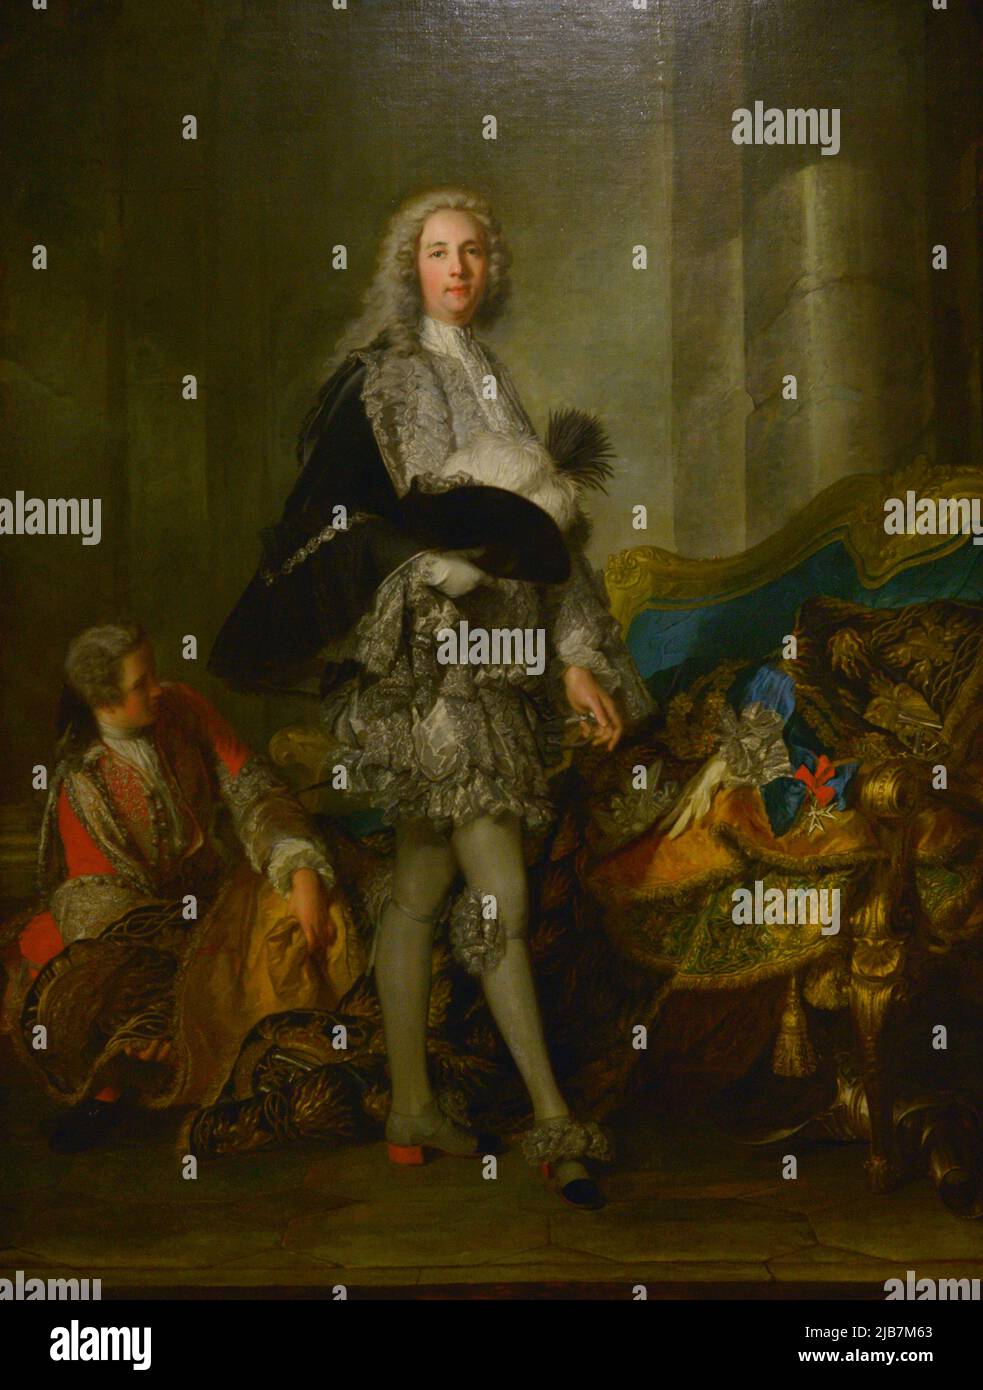 Louis François Armand de Vignerot du Plessis, Marshal Duke of Richelieu (1696-1788). French soldier and politician. Portrait by Jean Marc Nattier (1685-1766), 1732. Oil on canvas. Calouste Gulbenkian Museum. Lisbon, Portugal. Stock Photo